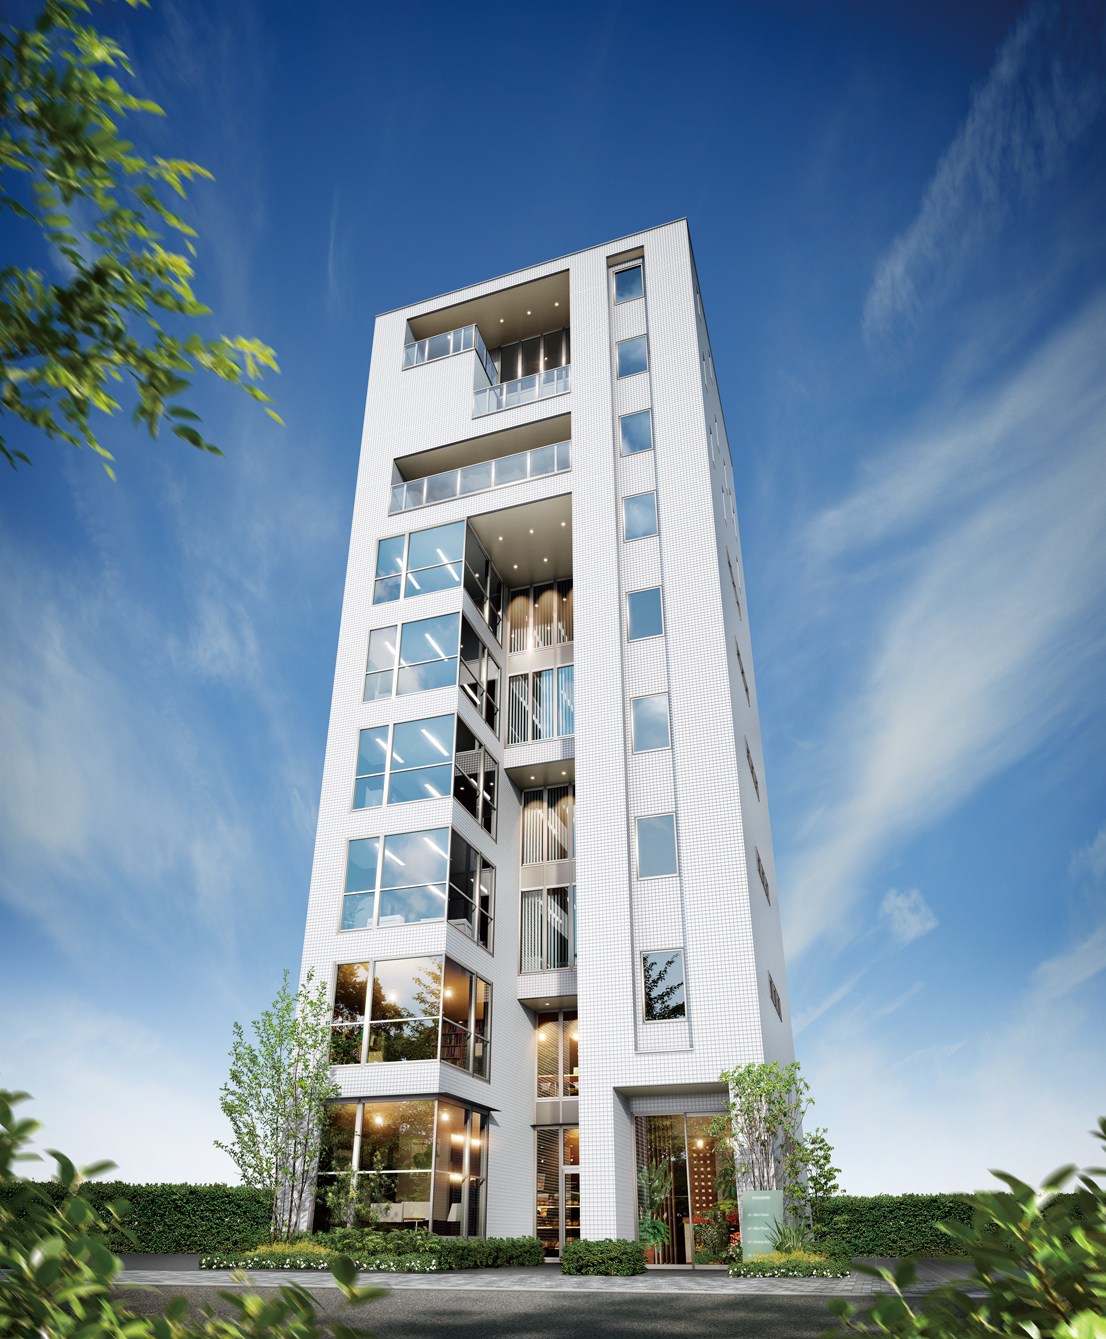 パナホーム Vieuno9 ビューノナイン 17年1月15日新発売 工業化住宅最高の9階建多層階住宅 重量鉄骨ラーメン構造採用 パナソニックのプレスリリース